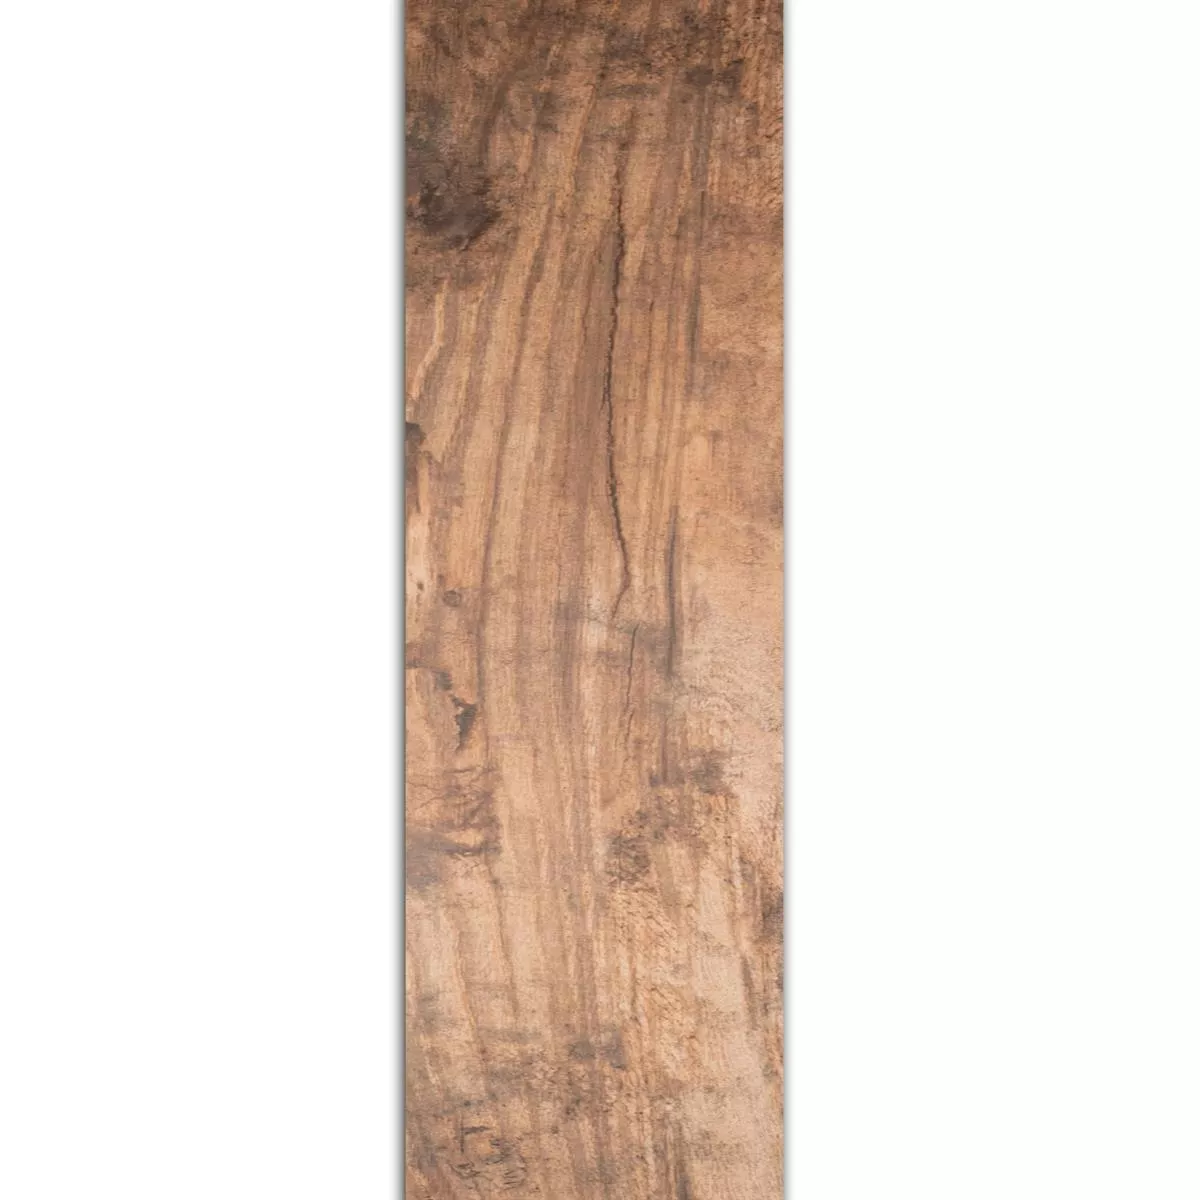 Próbka Płytki Podłogowe Wygląd Drewna Global Brązowy 20x180cm